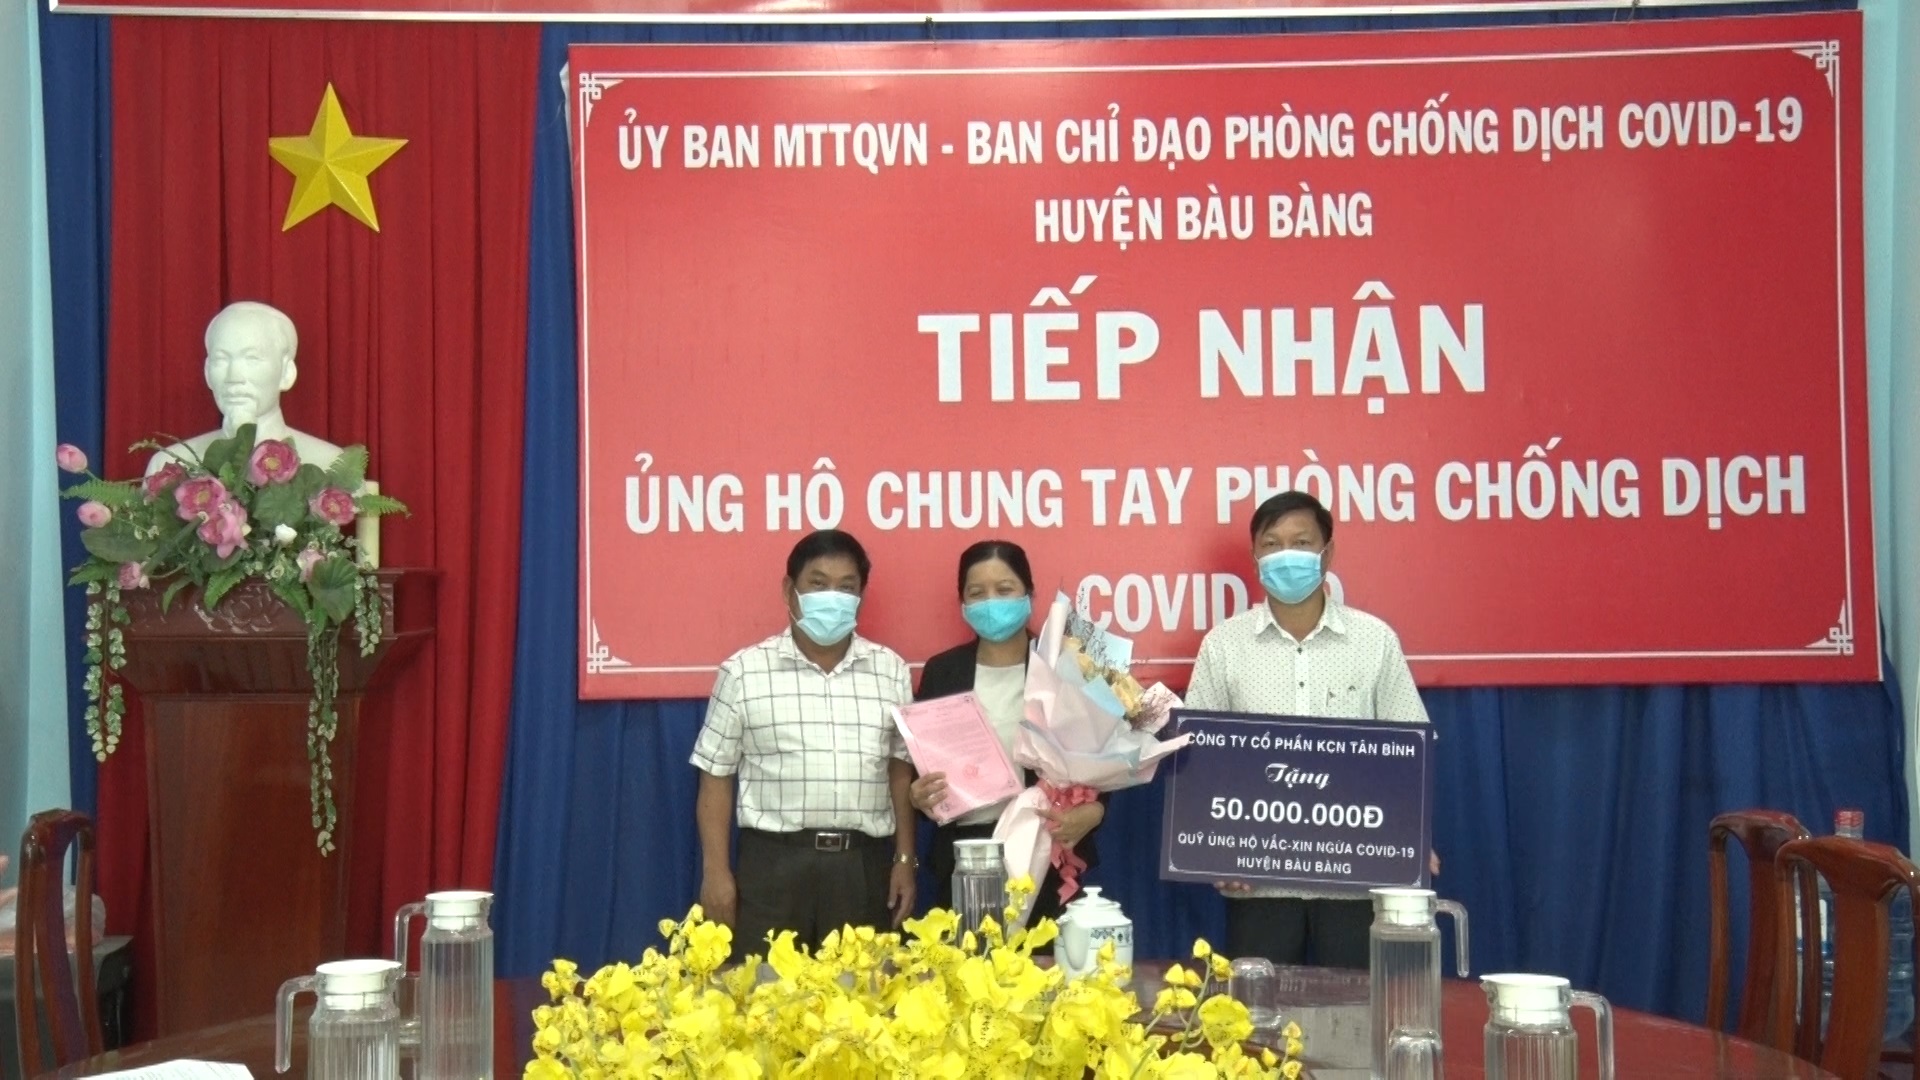 Huyện Bàu Bàng tổ chức lễ tiếp nhận quỹ phòng, chống Covid-19 trên địa bàn huyện